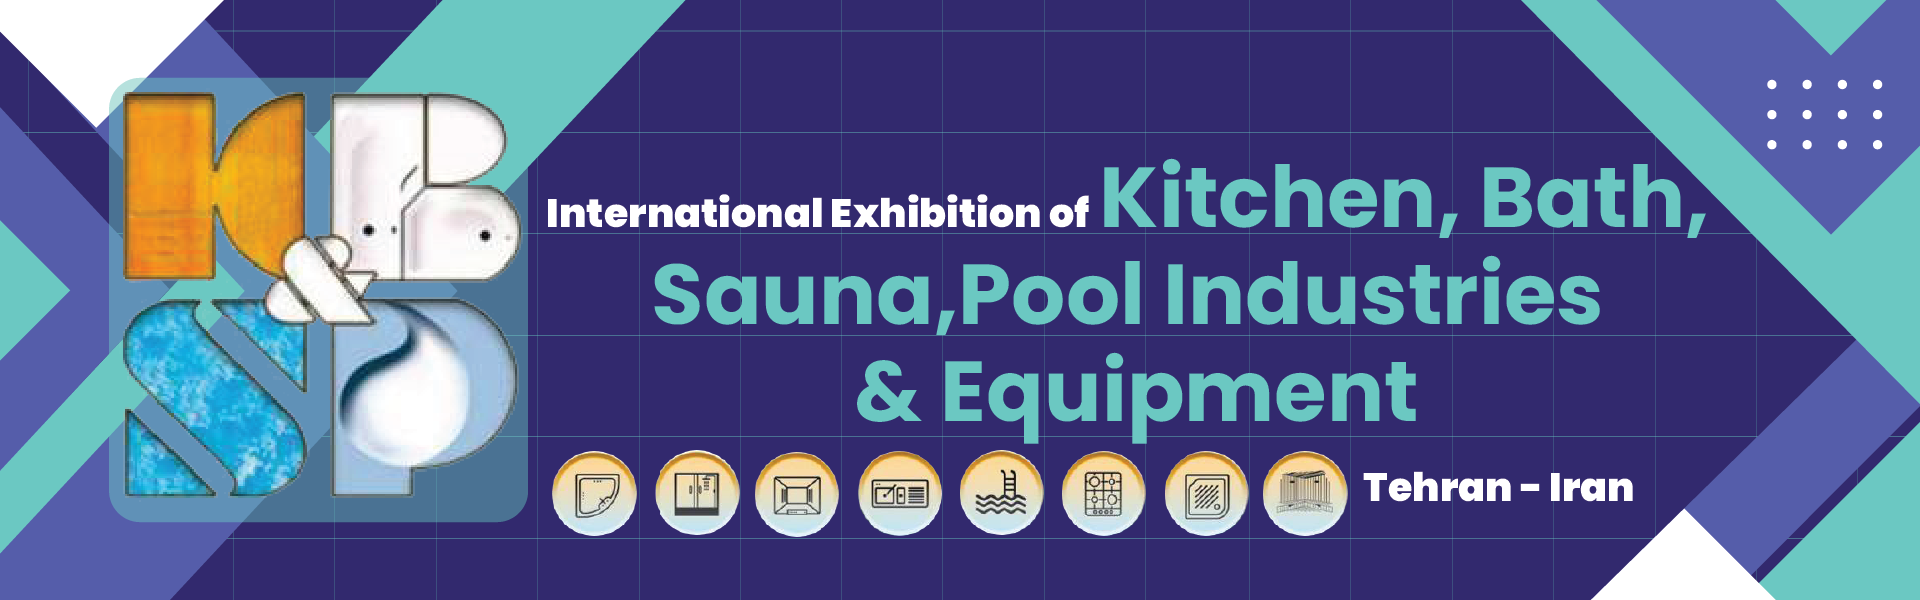 Iran Exhibition of Kitchen Bath Sauna & Pool Equipment (KBSP)